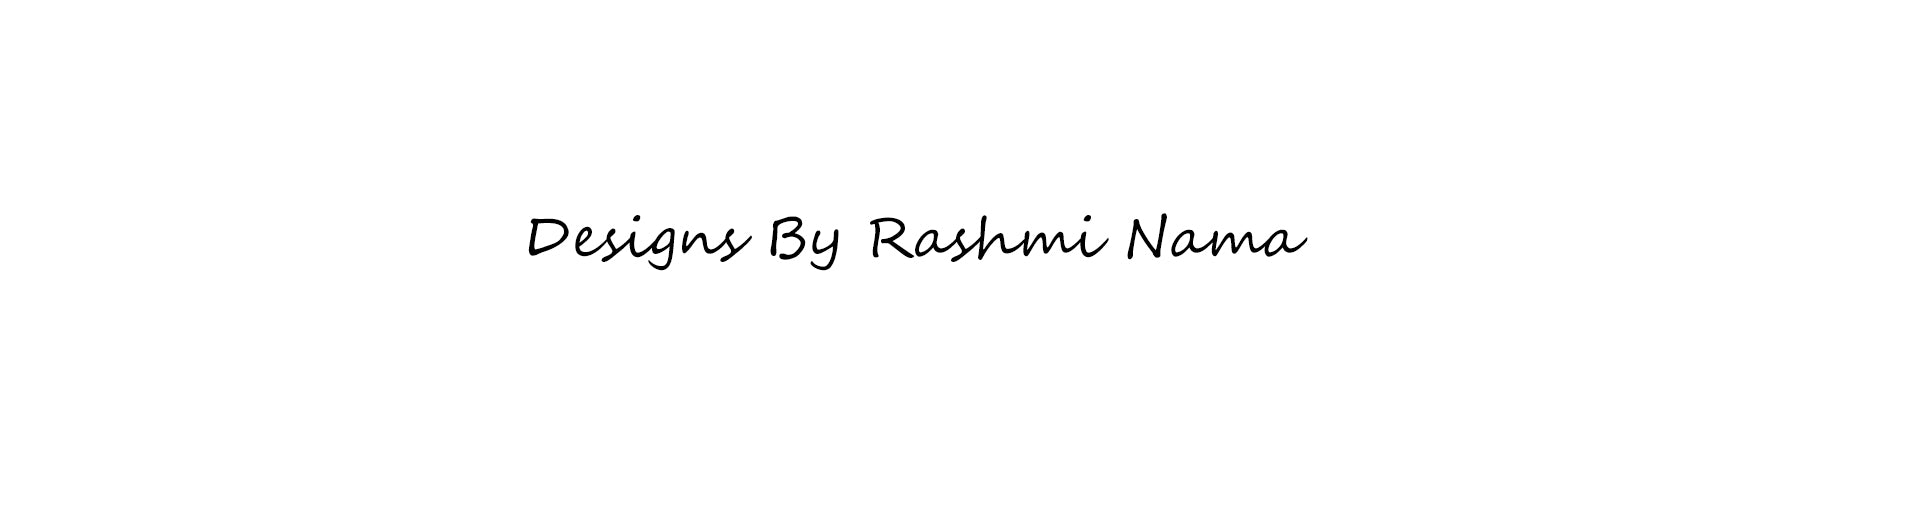 Rashmi Nama